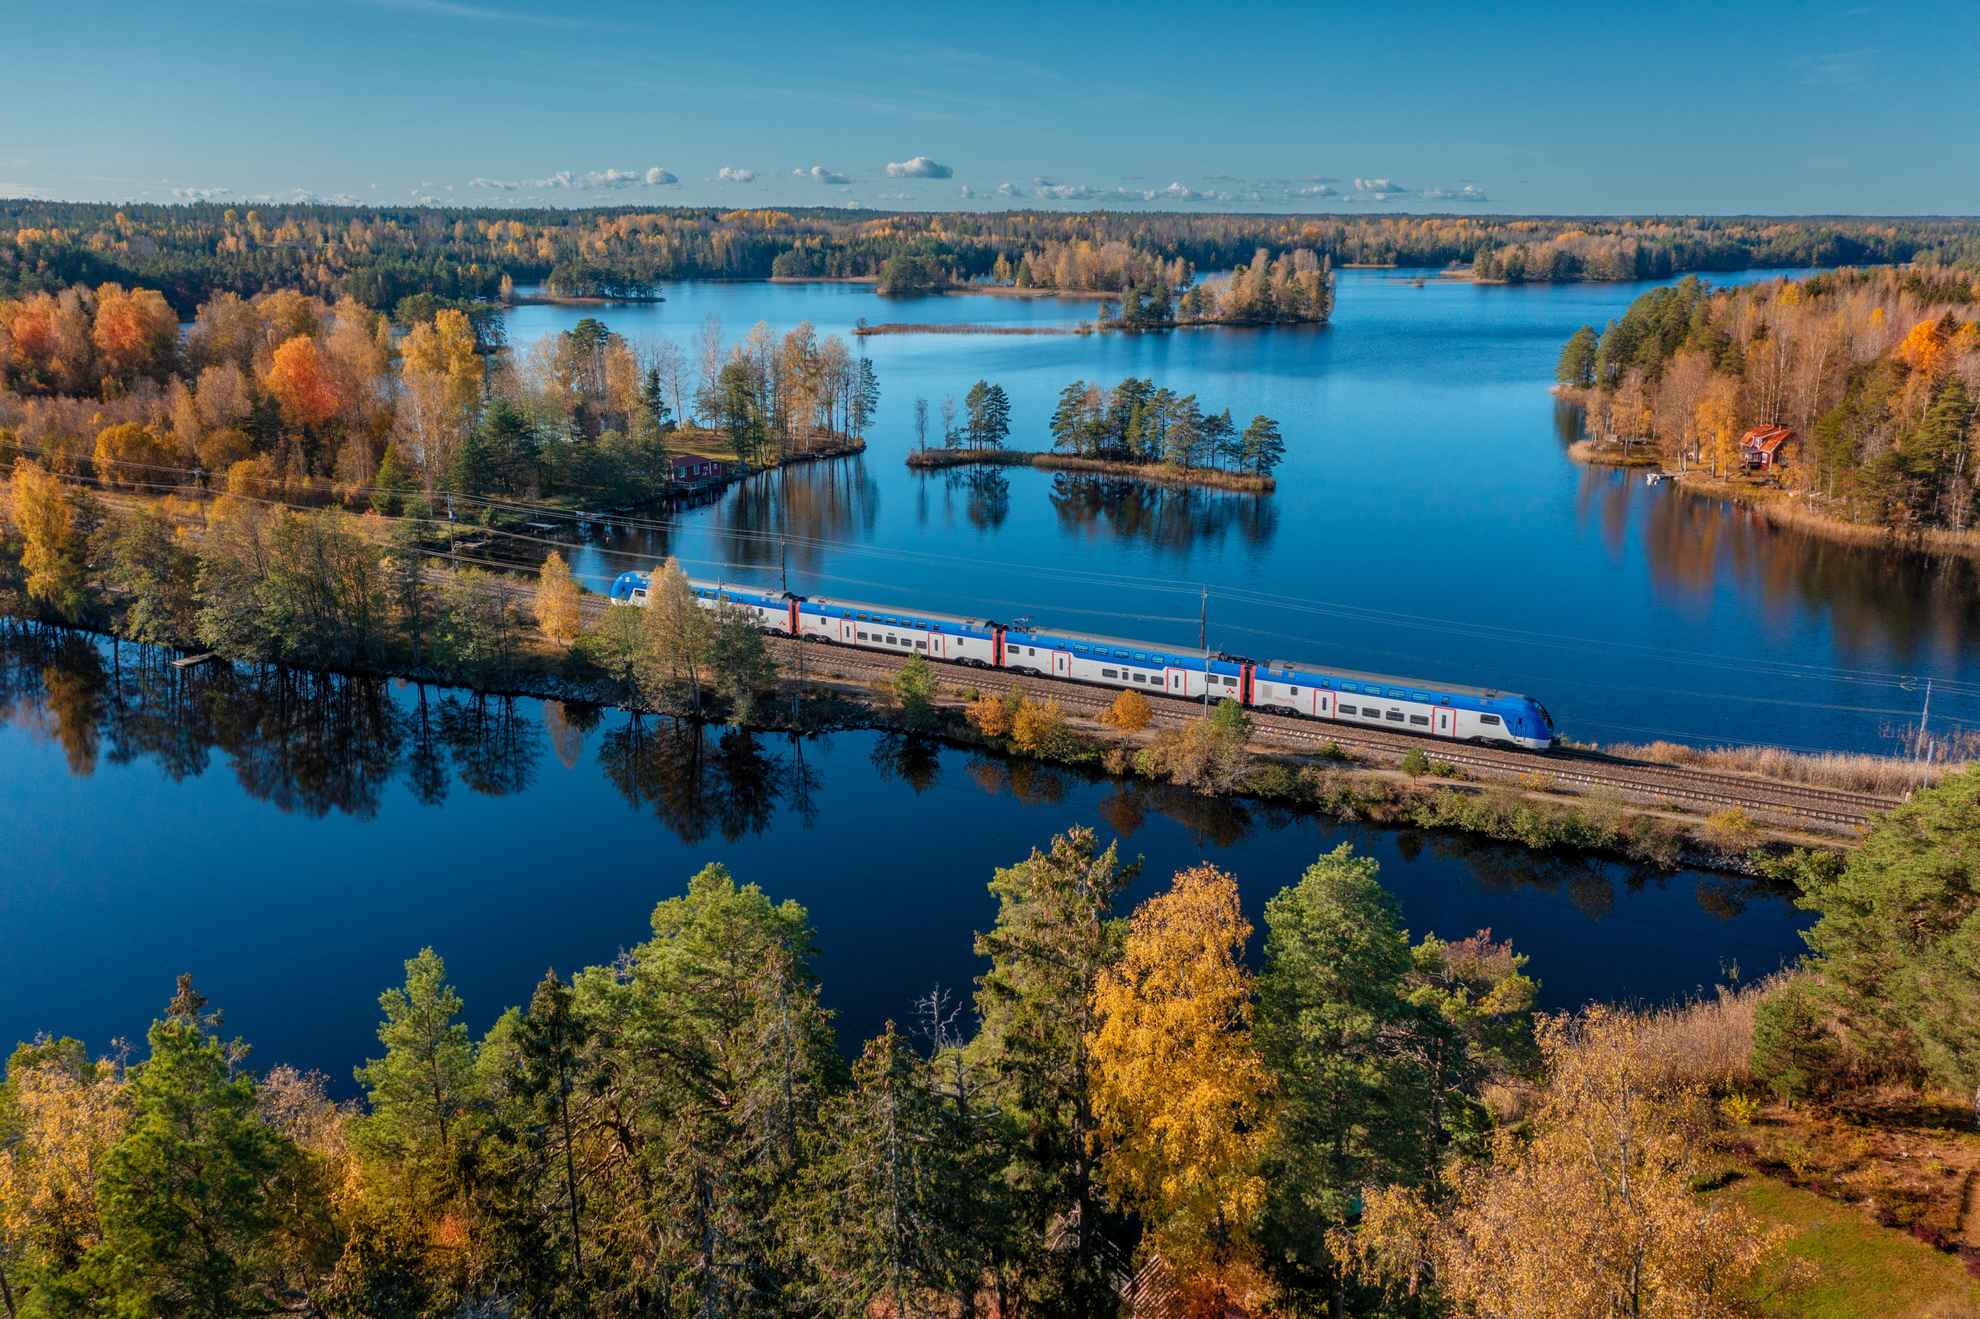 Een luchtfoto van een trein die door een boslandschap met meren in de herfst rijdt.